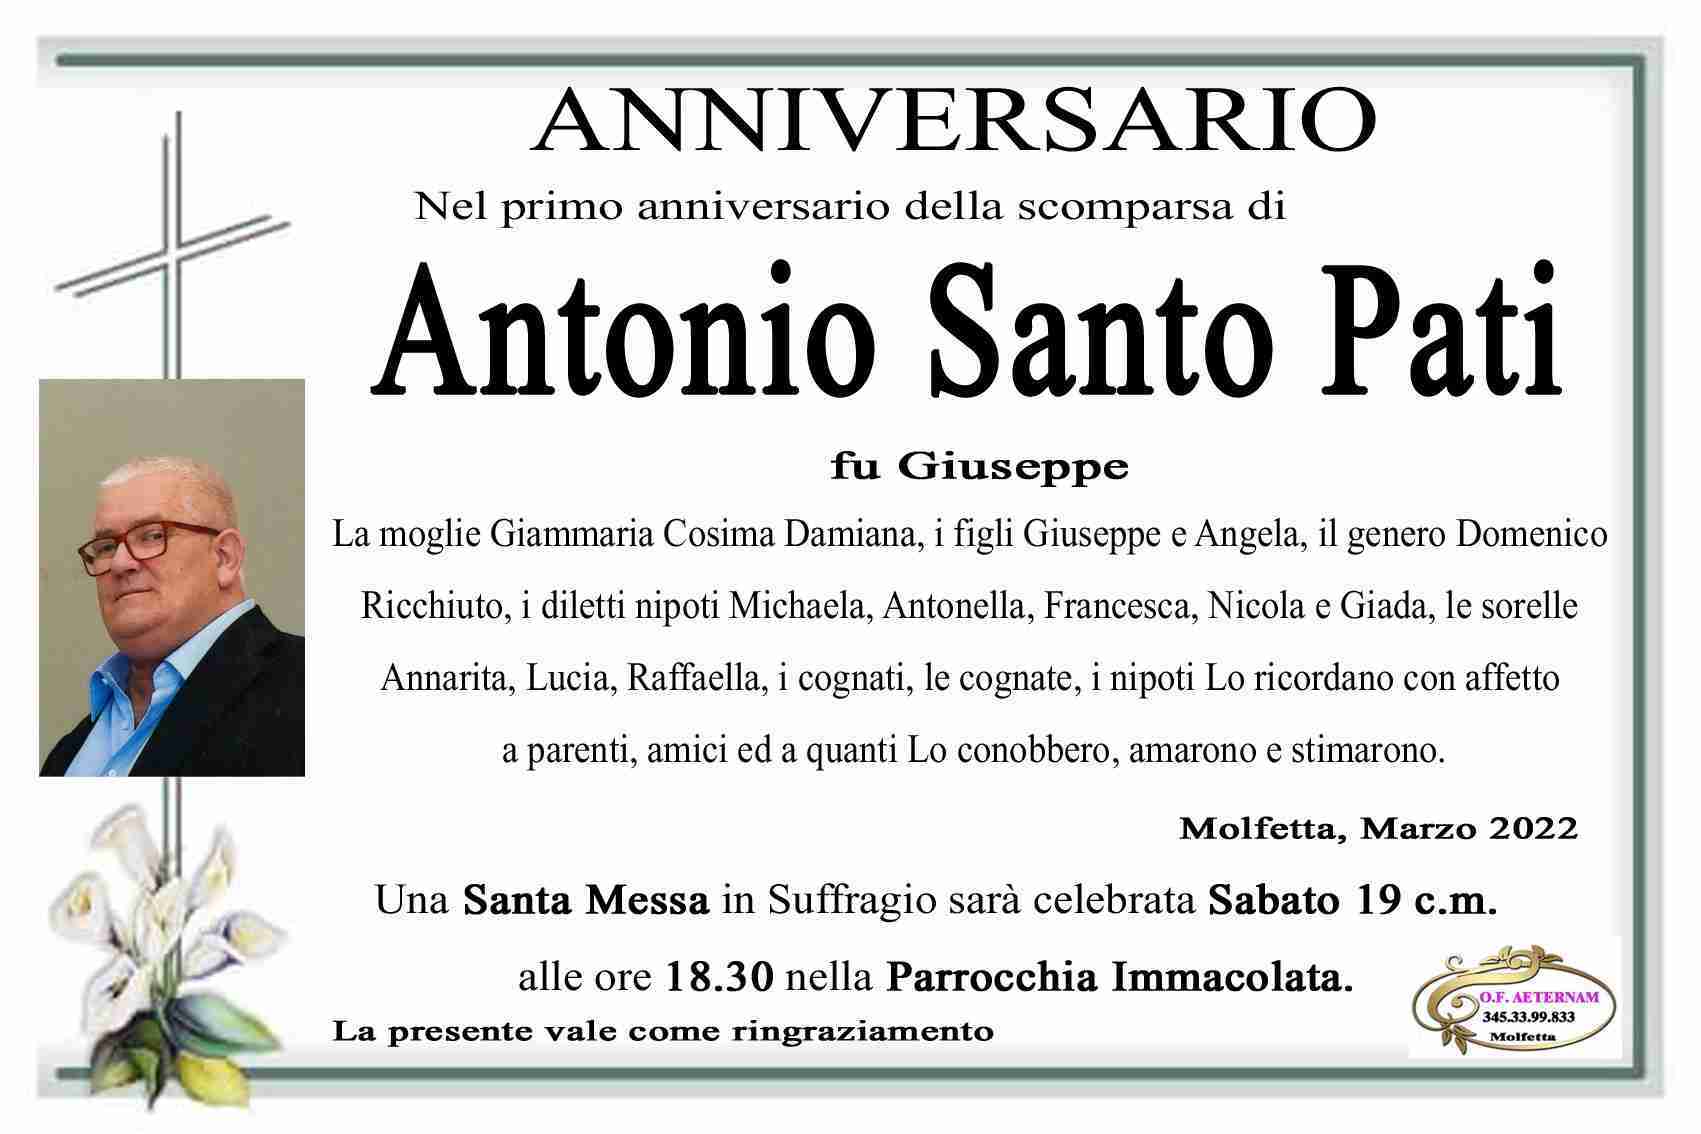 Antonio Santo Pati